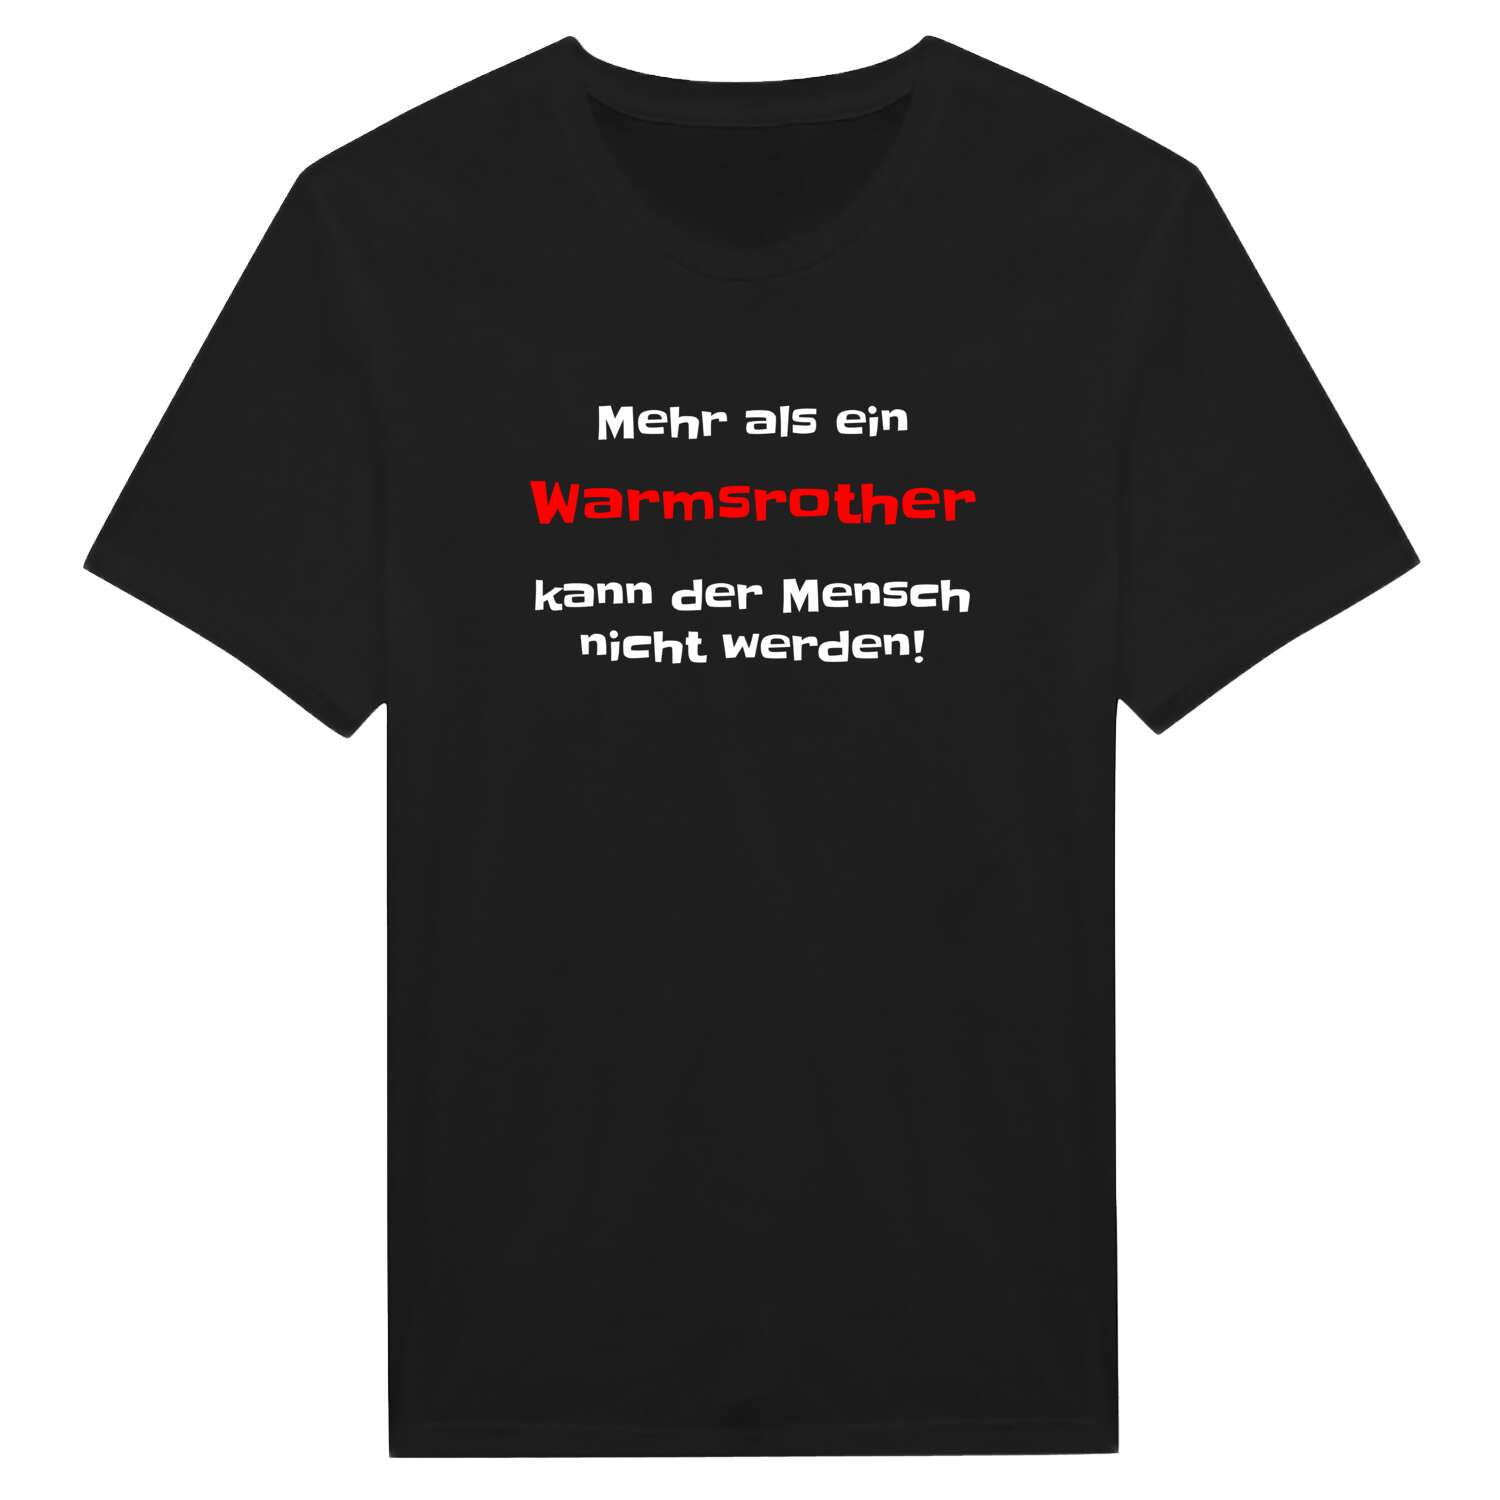 Warmsroth T-Shirt »Mehr als ein«